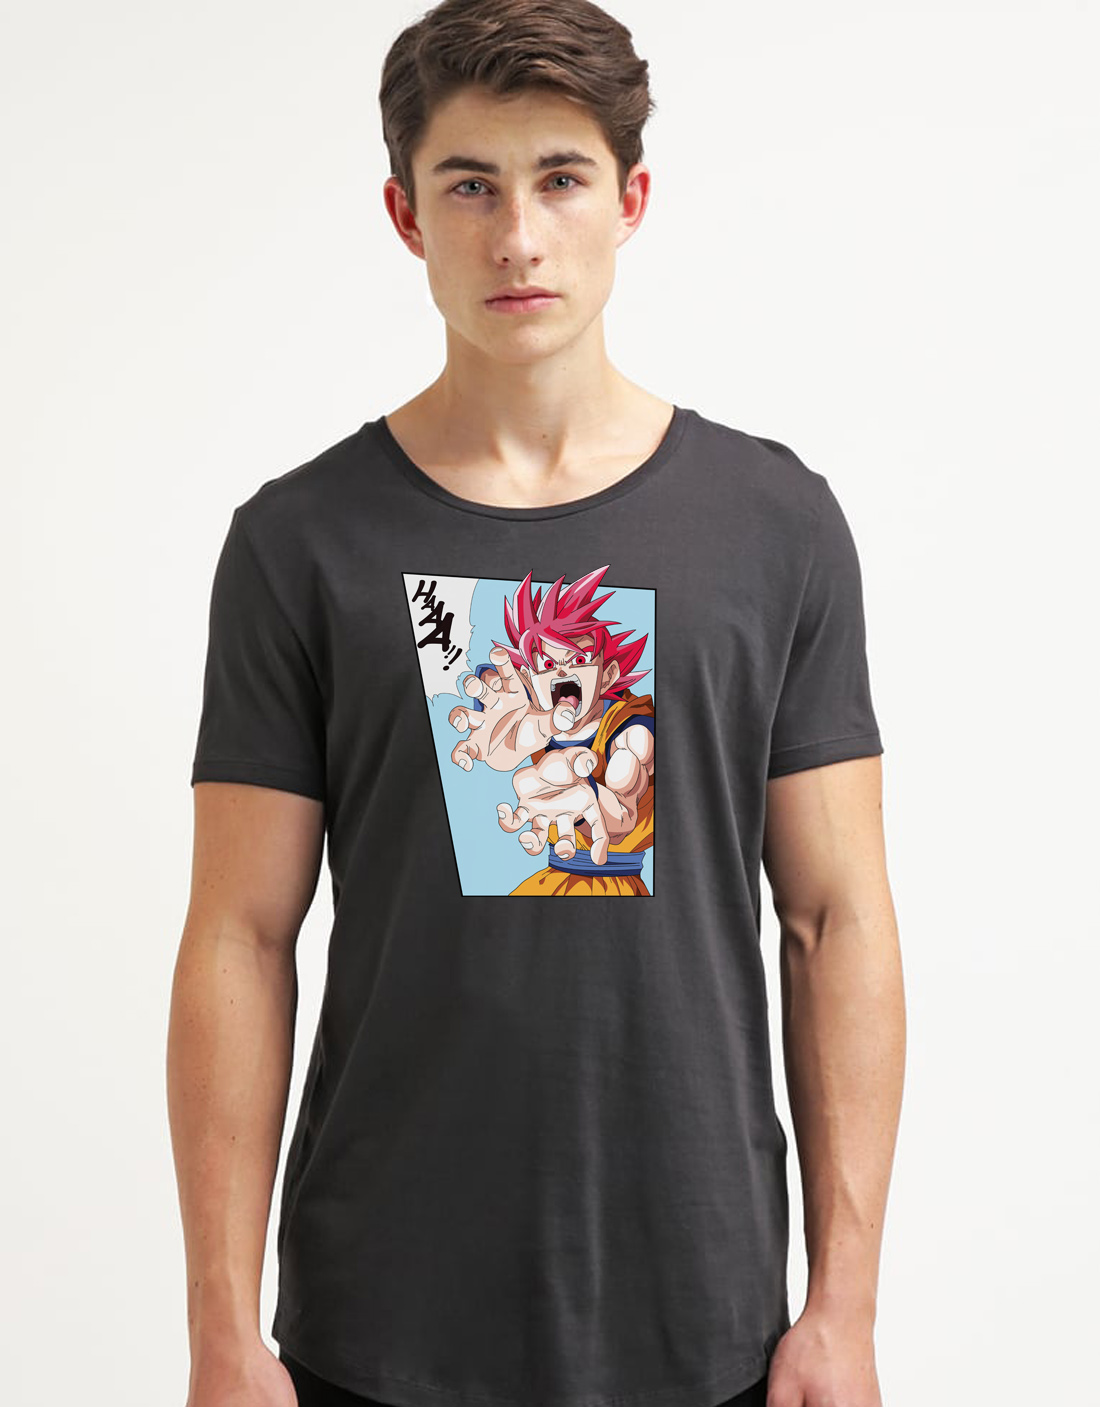 Diseño camiseta personalizada Goku